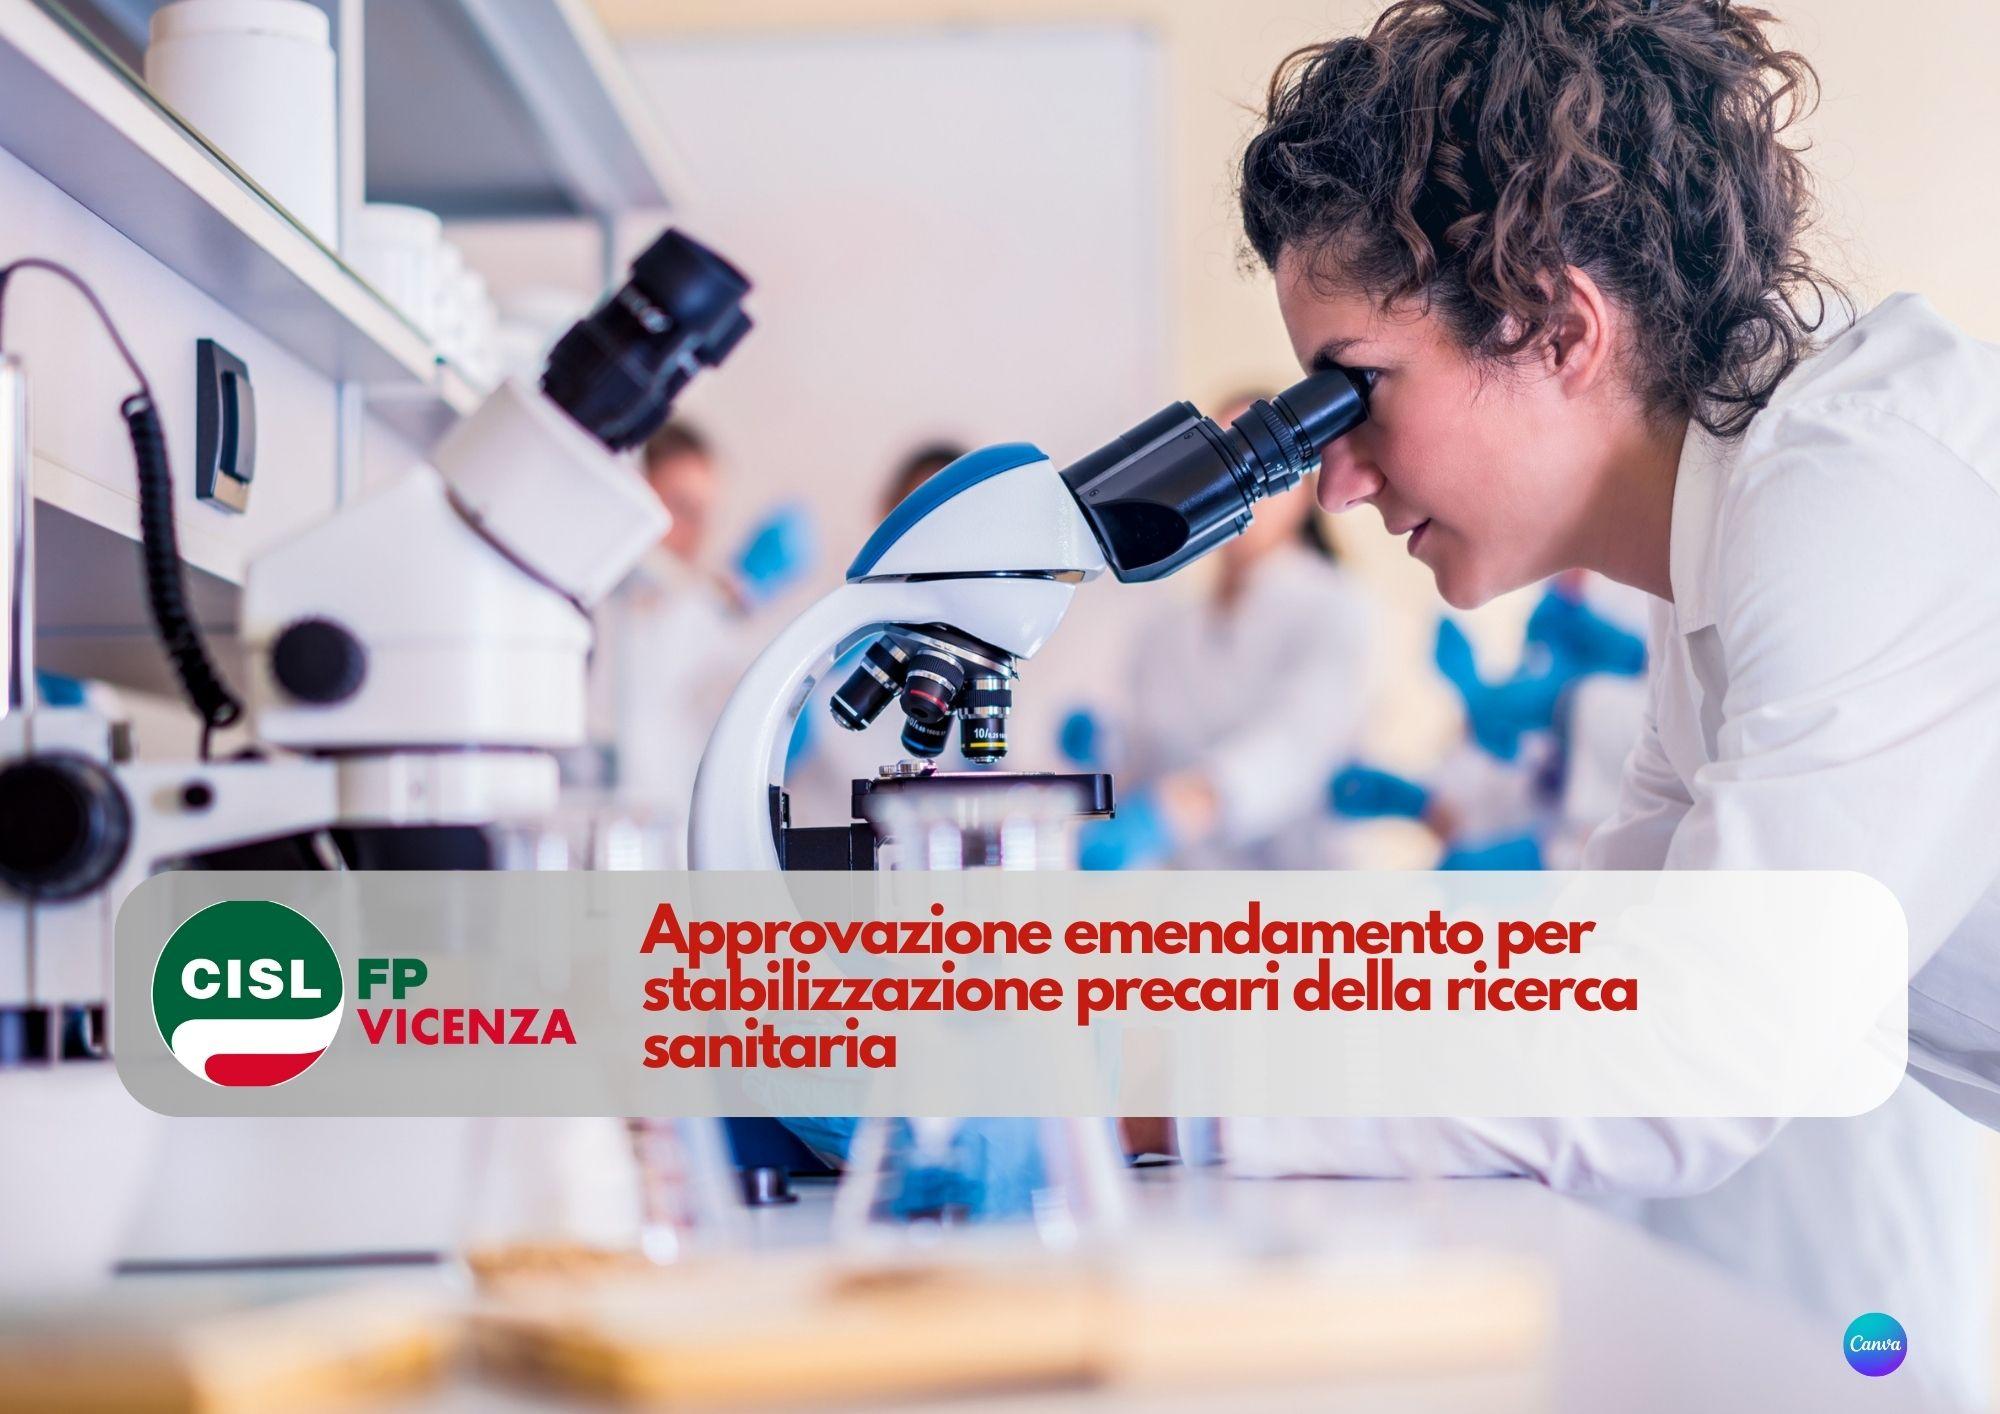 CISL FP Vicenza. Approvazione emendamento per stabilizzazione precari della ricerca sanitaria